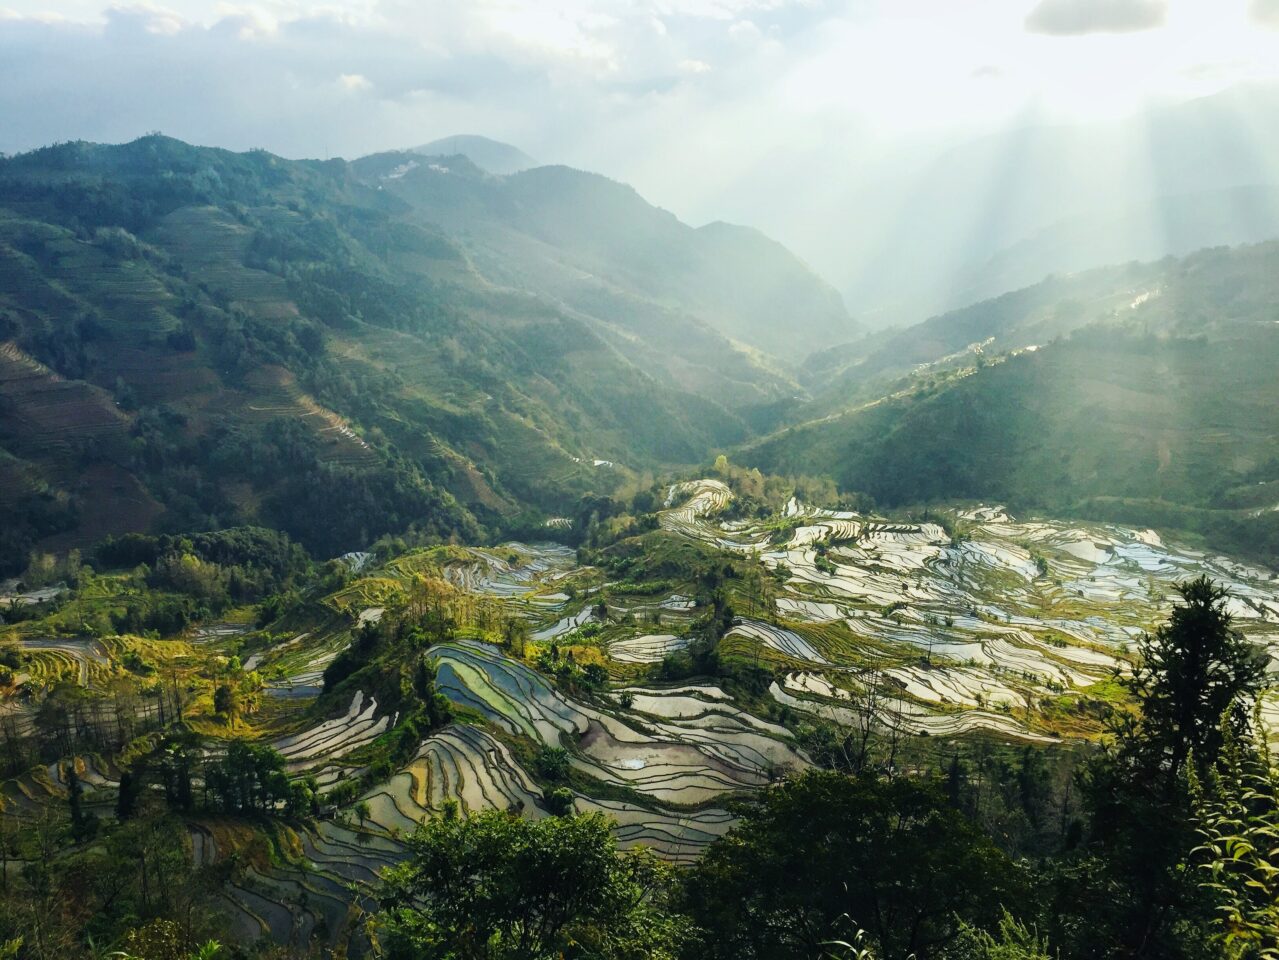 Yuanyang rice terraces. Photo credit: Anna Coco